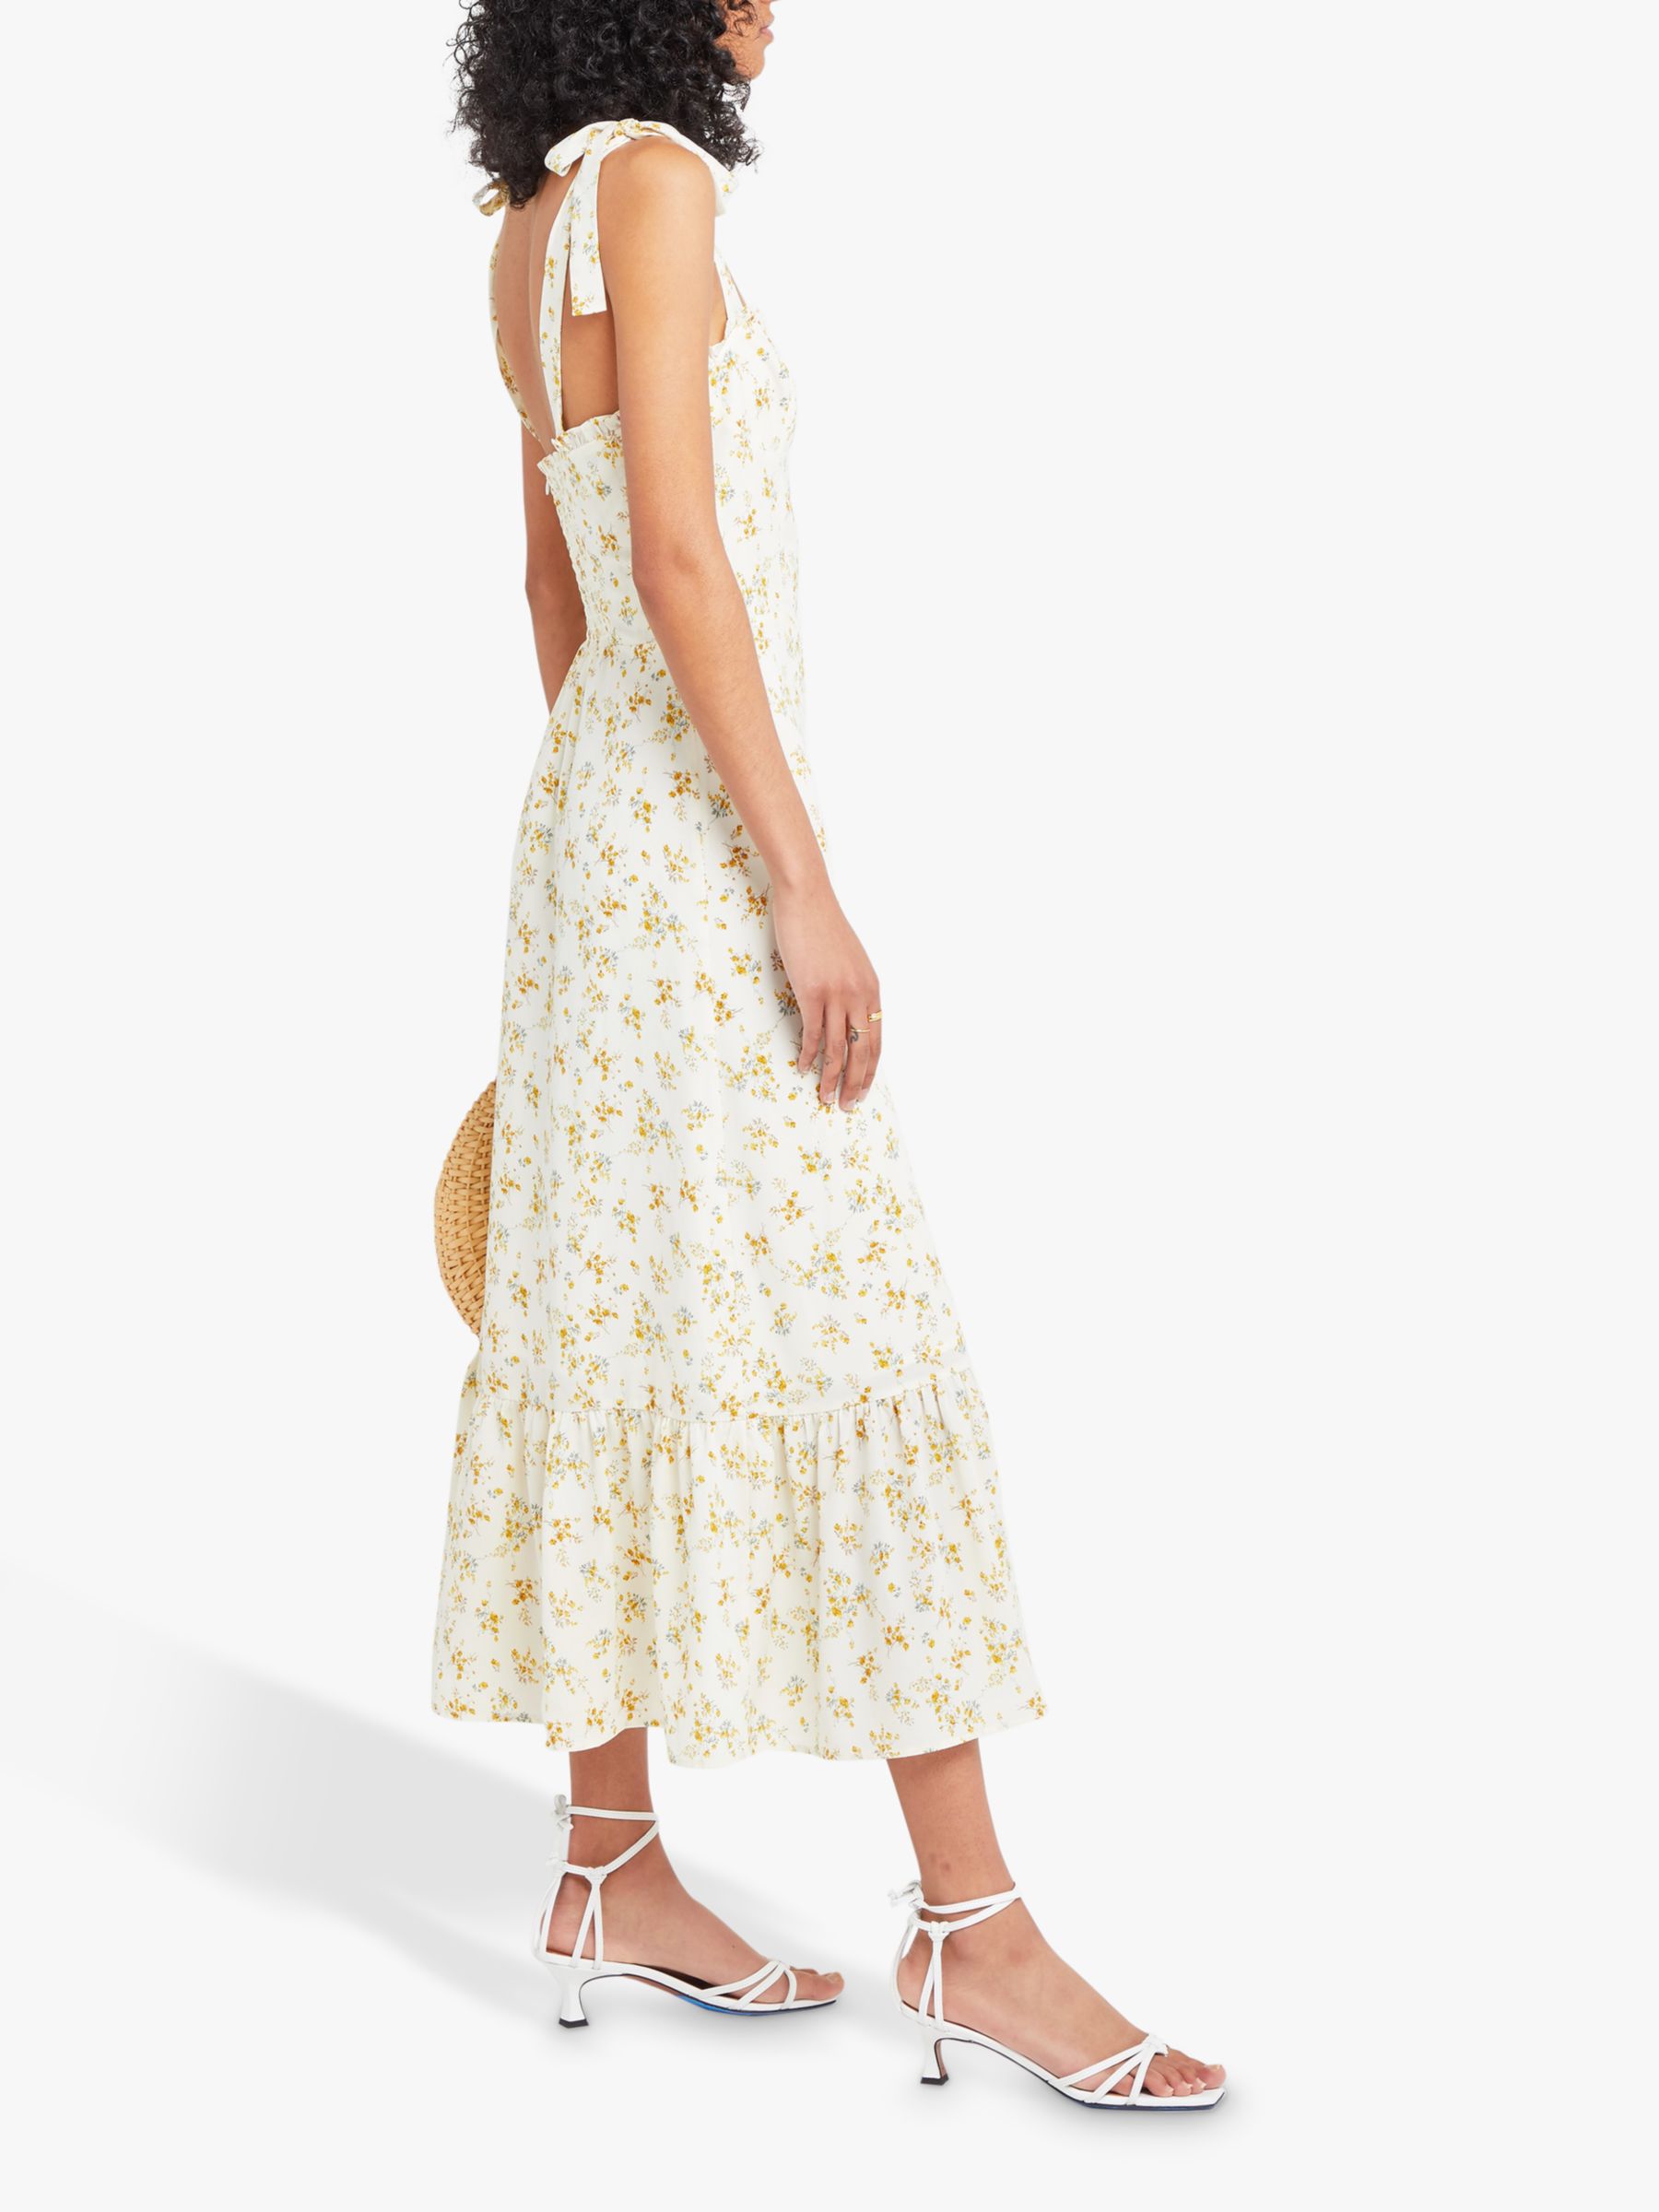 o.p.t Toile de Jouy Floral Print Sleeveless Midi Dress, White, XL